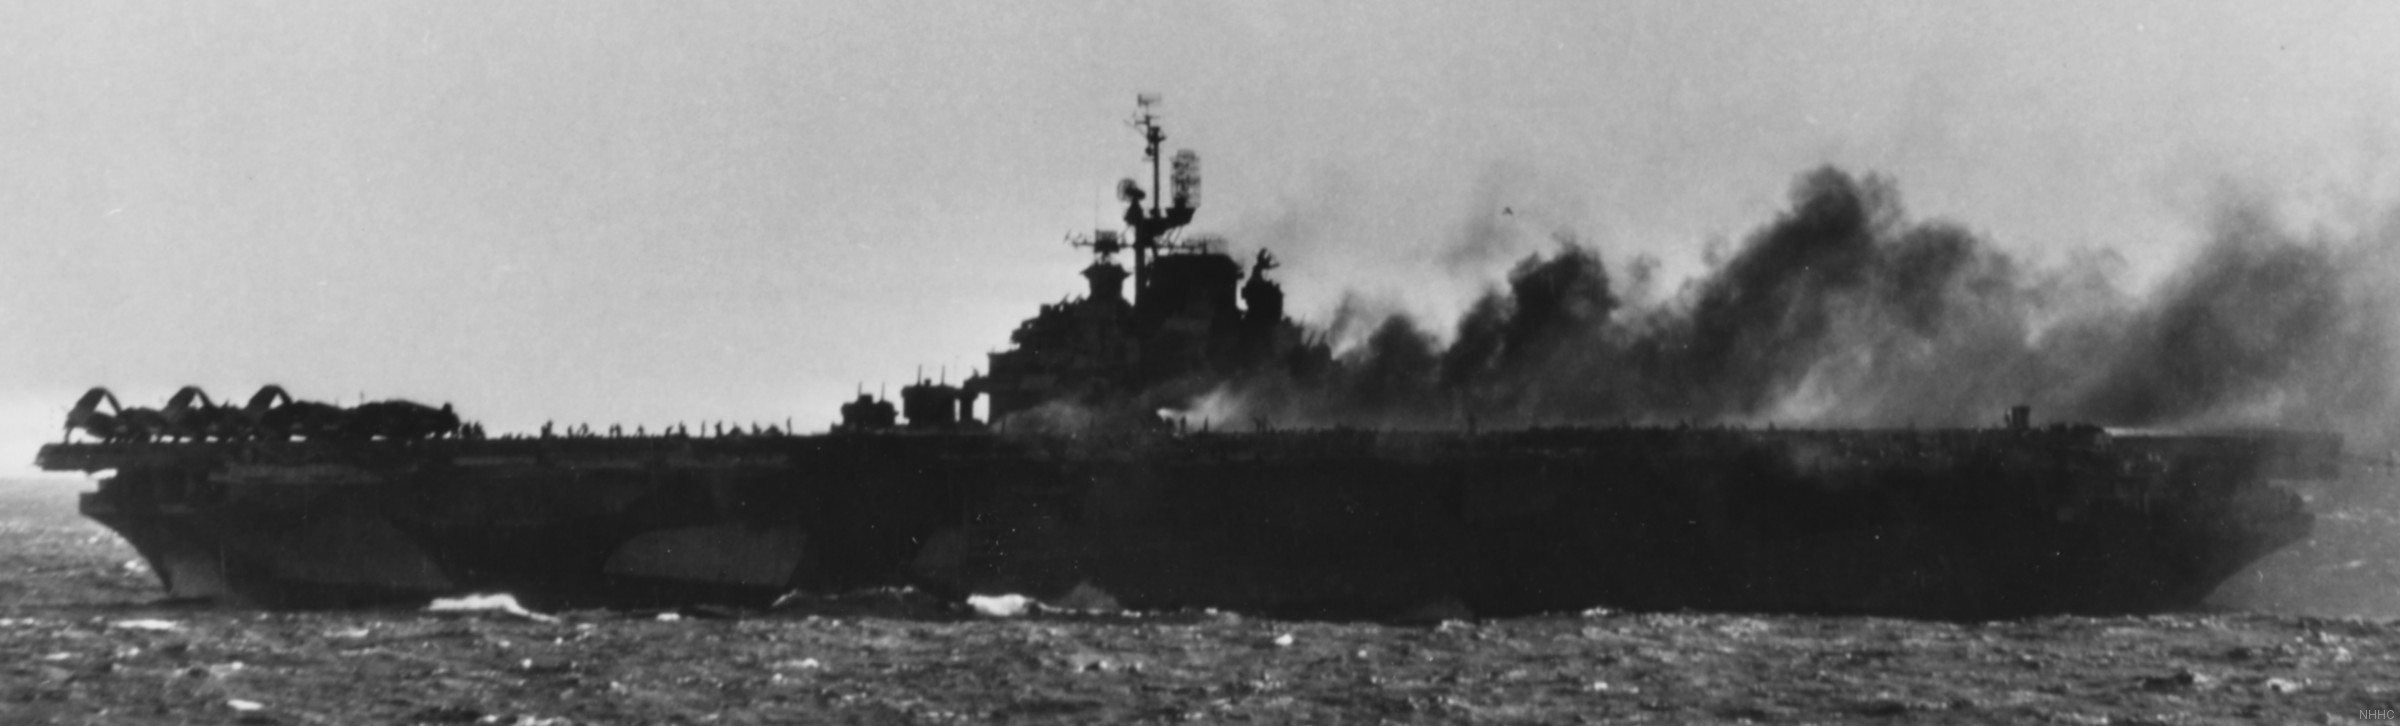 cva-19 uss hancock cv essex class aircraft carrier 43 flight deck fire